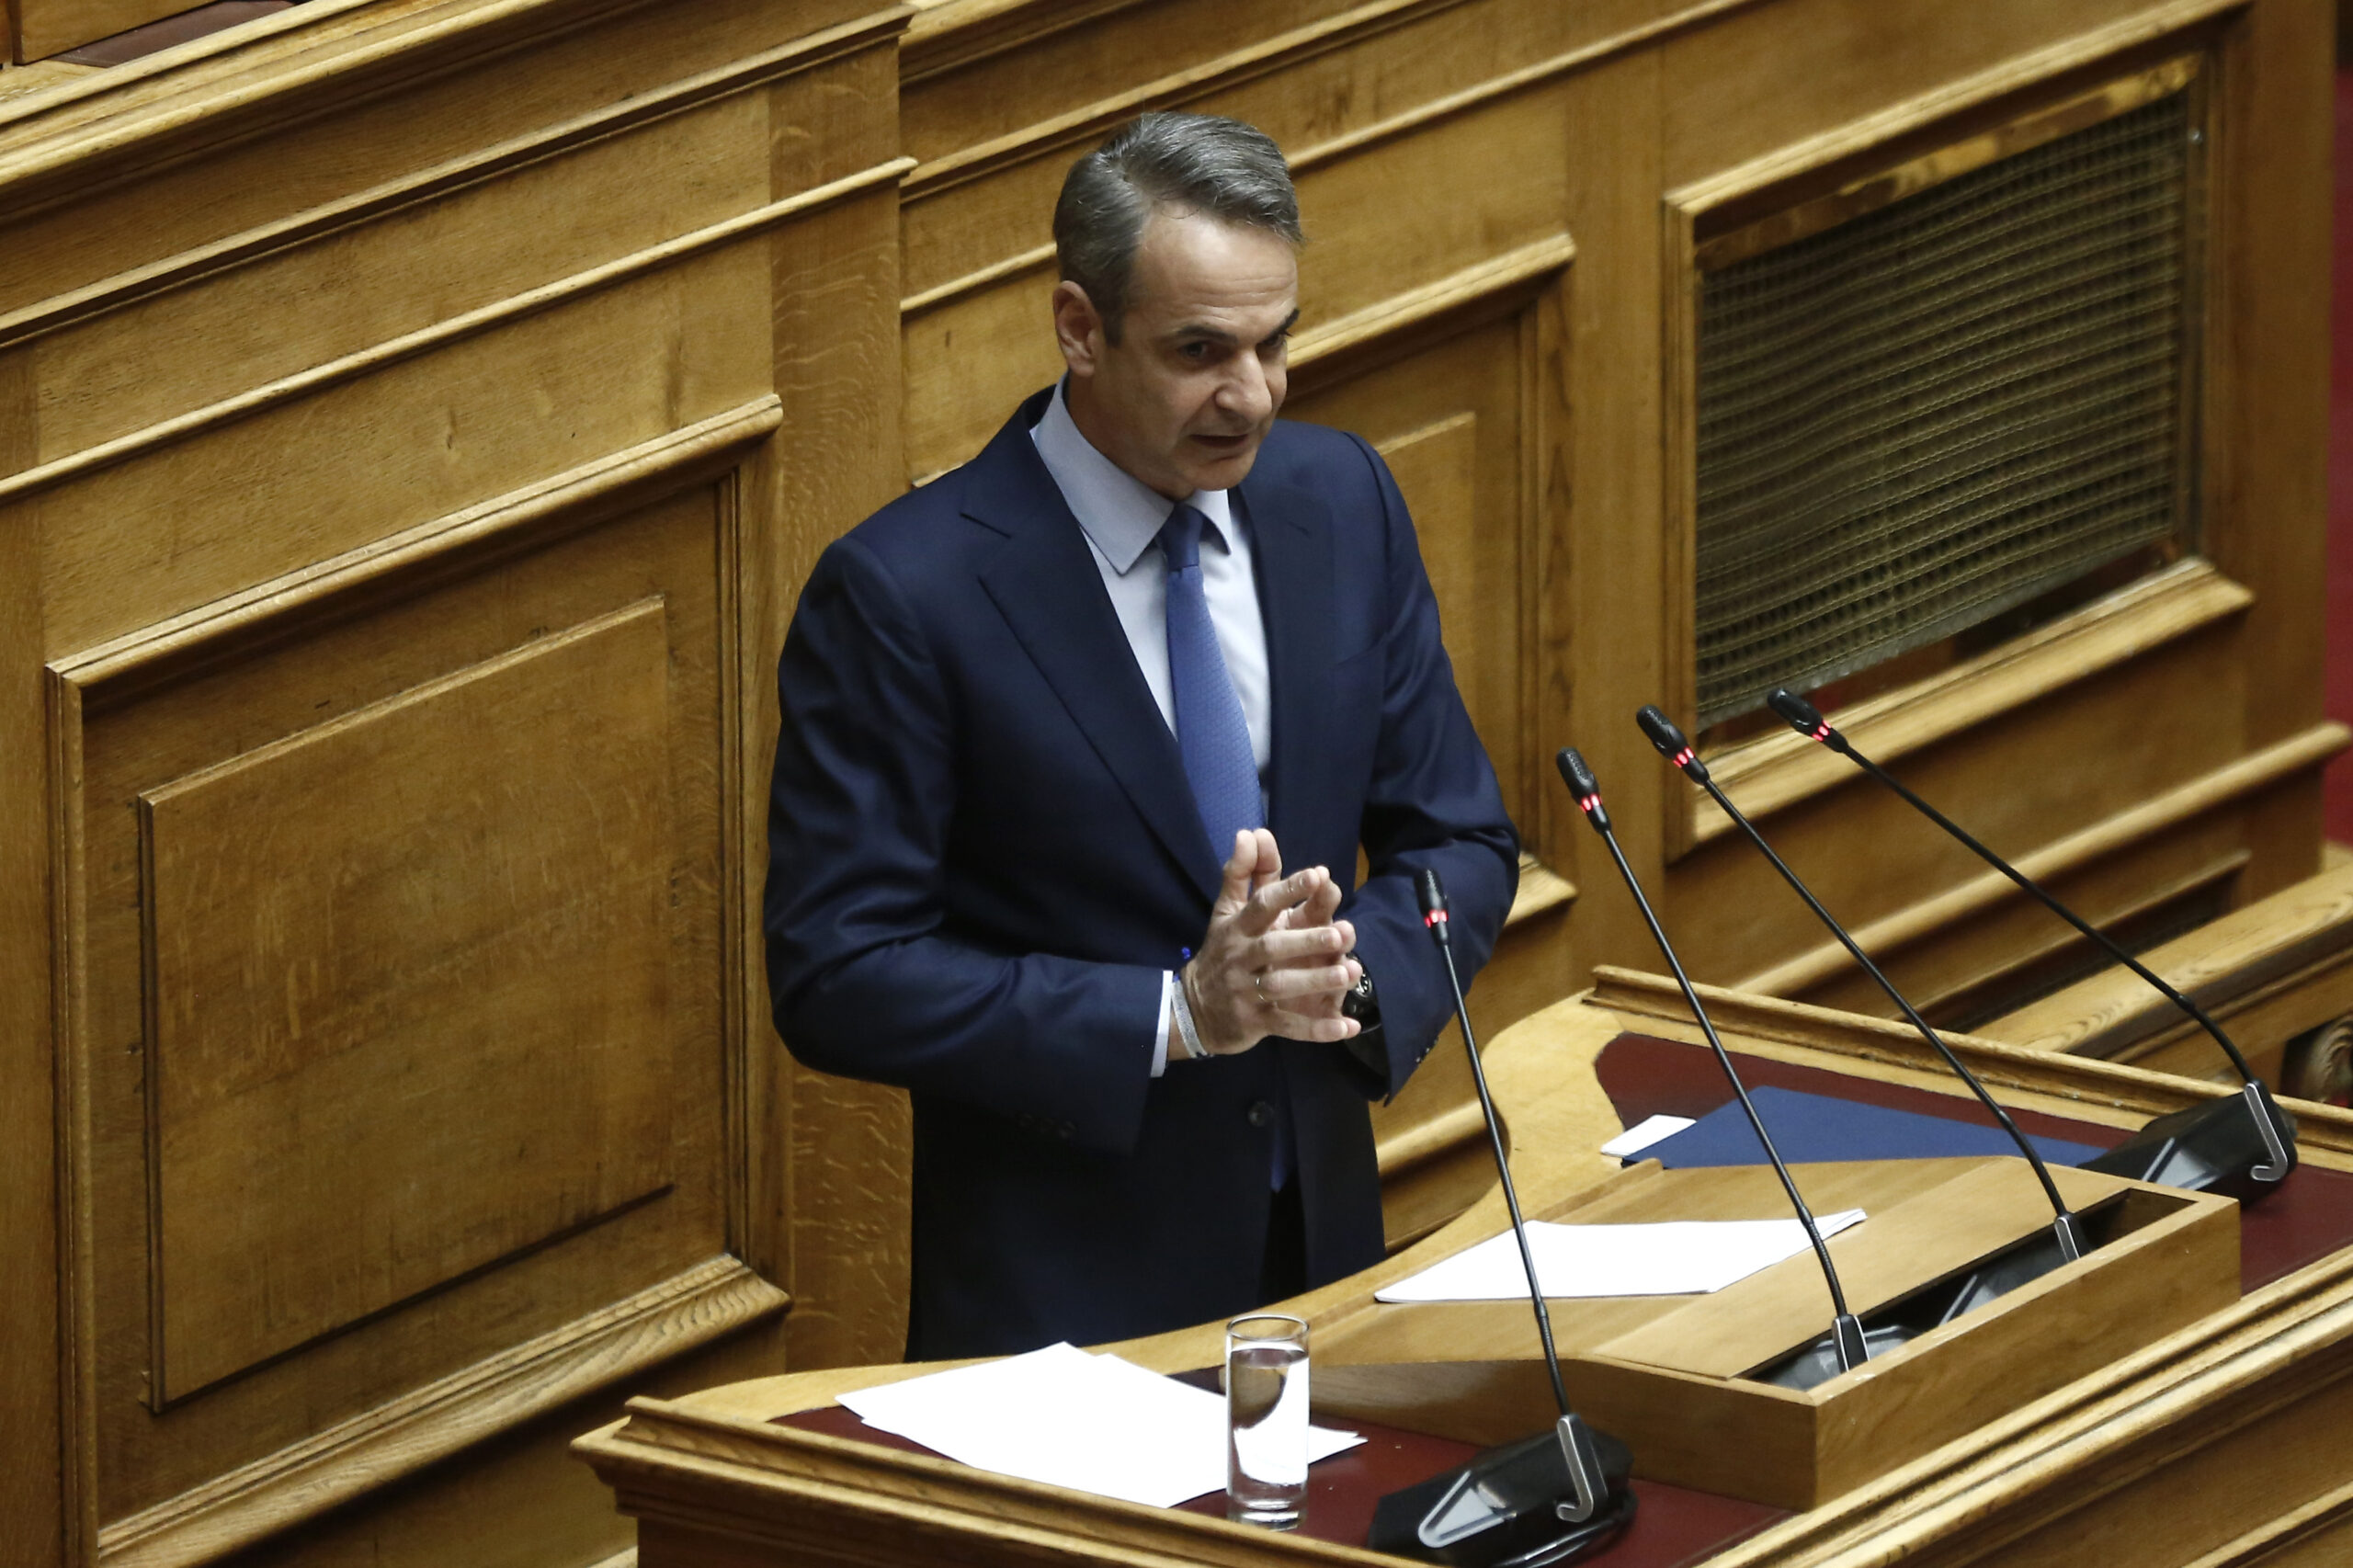 Κόντρα Μητσοτάκη – Βελόπουλου στη Βουλή: «Σε δύο λεπτά είπατε απίστευτα ψέματα» είπε ο πρωθυπουργός (Βίντεο)